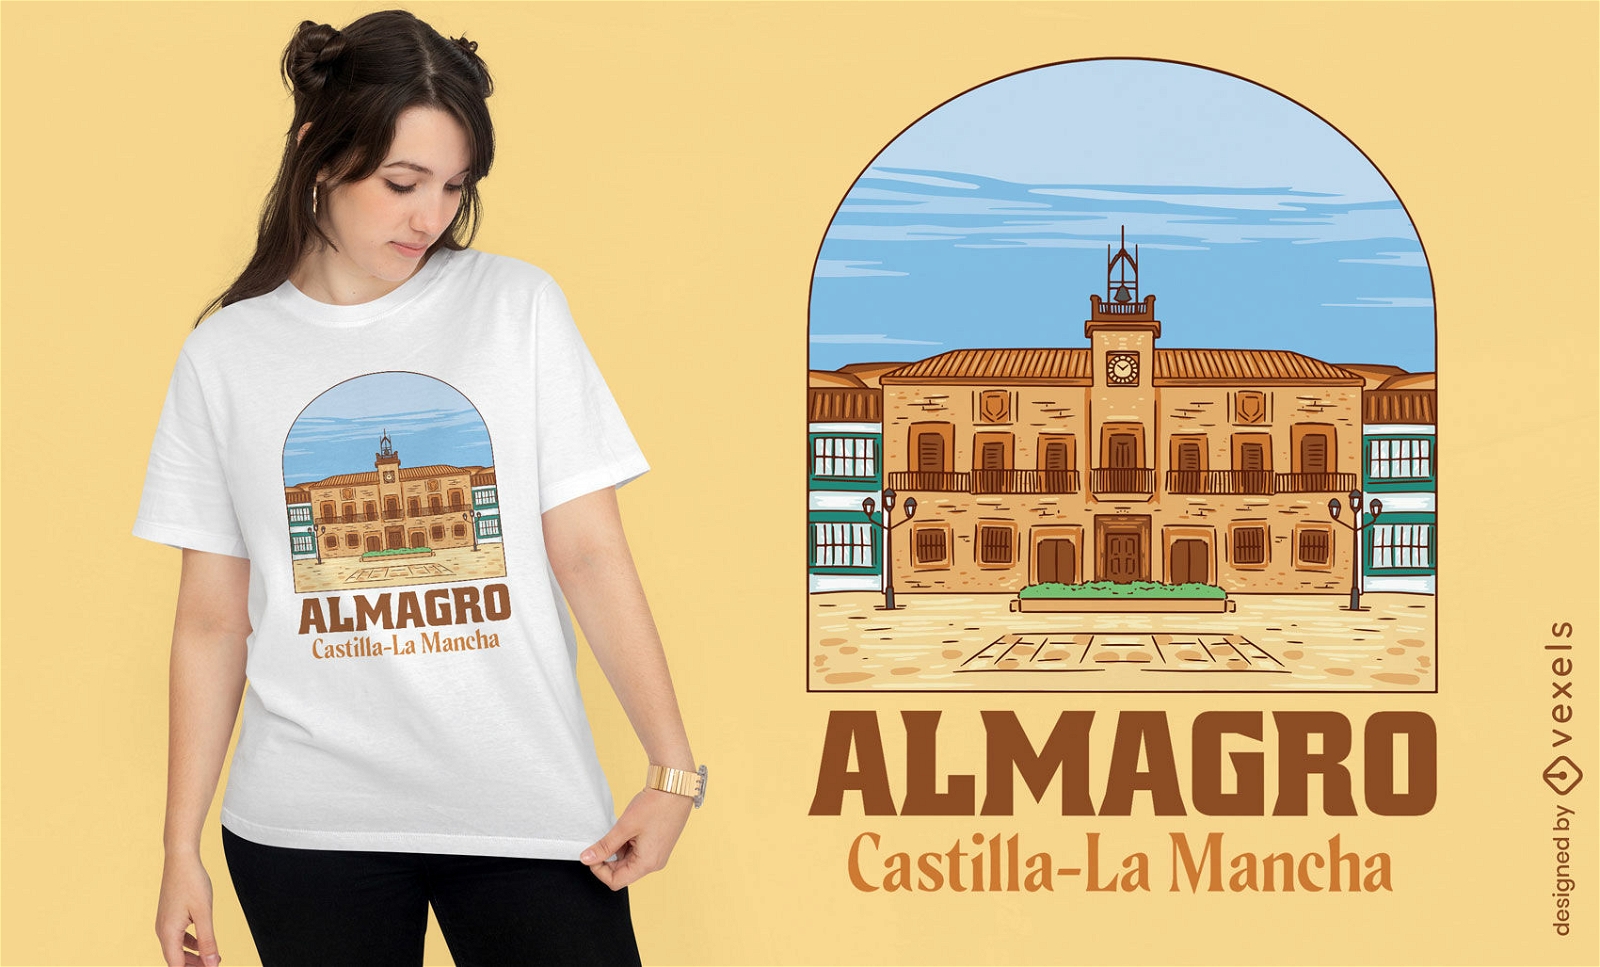 Almagro spain city traveling t-shirt design